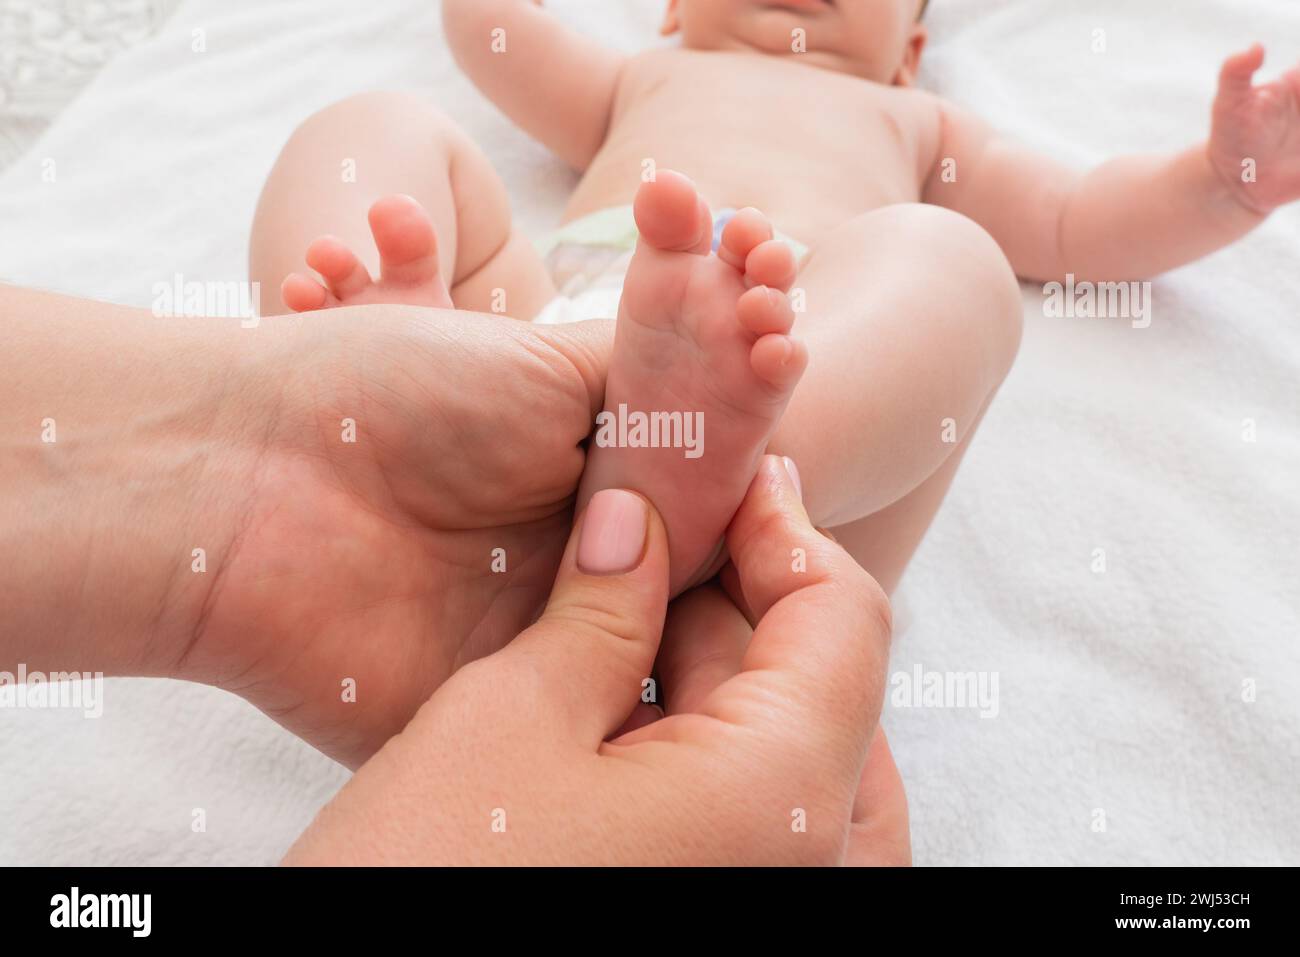 Mutter massiert die winzigen Füße ihres Kindes, Konzept der Pflege und Pflege Stockfoto